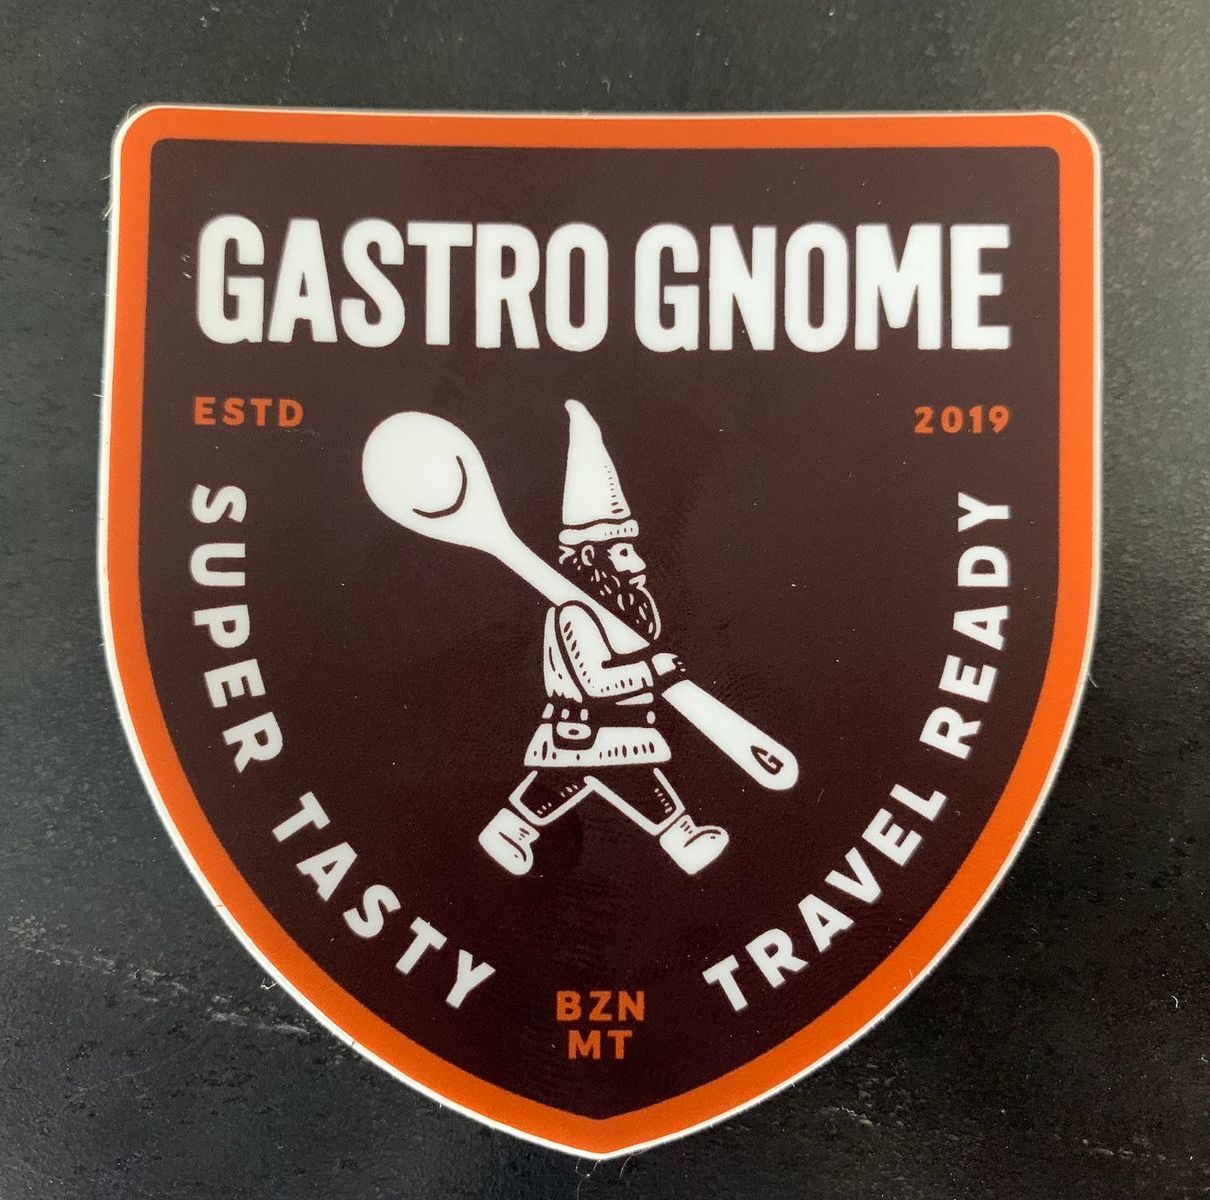 gastro gnome logo sticker classic